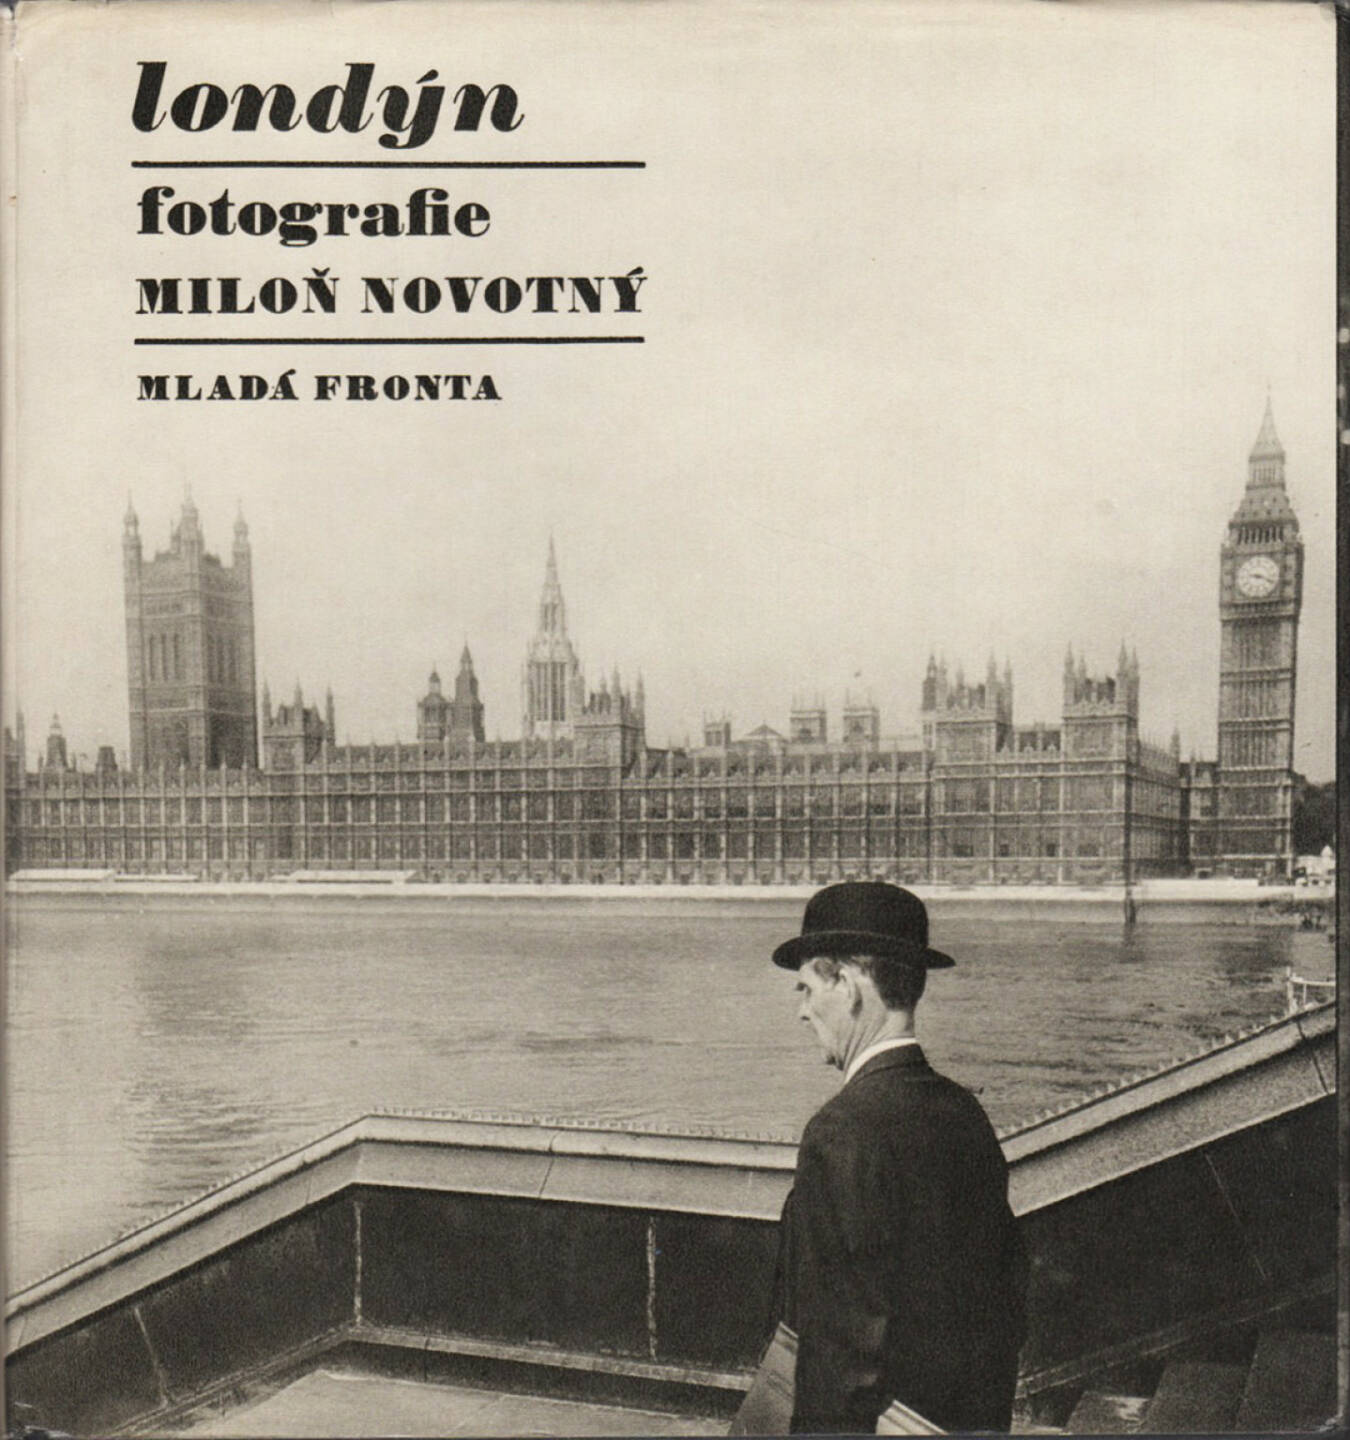 Miloň Novotný - Londýn (London), Mladá fronta 1968, Cover - http://josefchladek.com/book/miloň_novotny_-_londyn